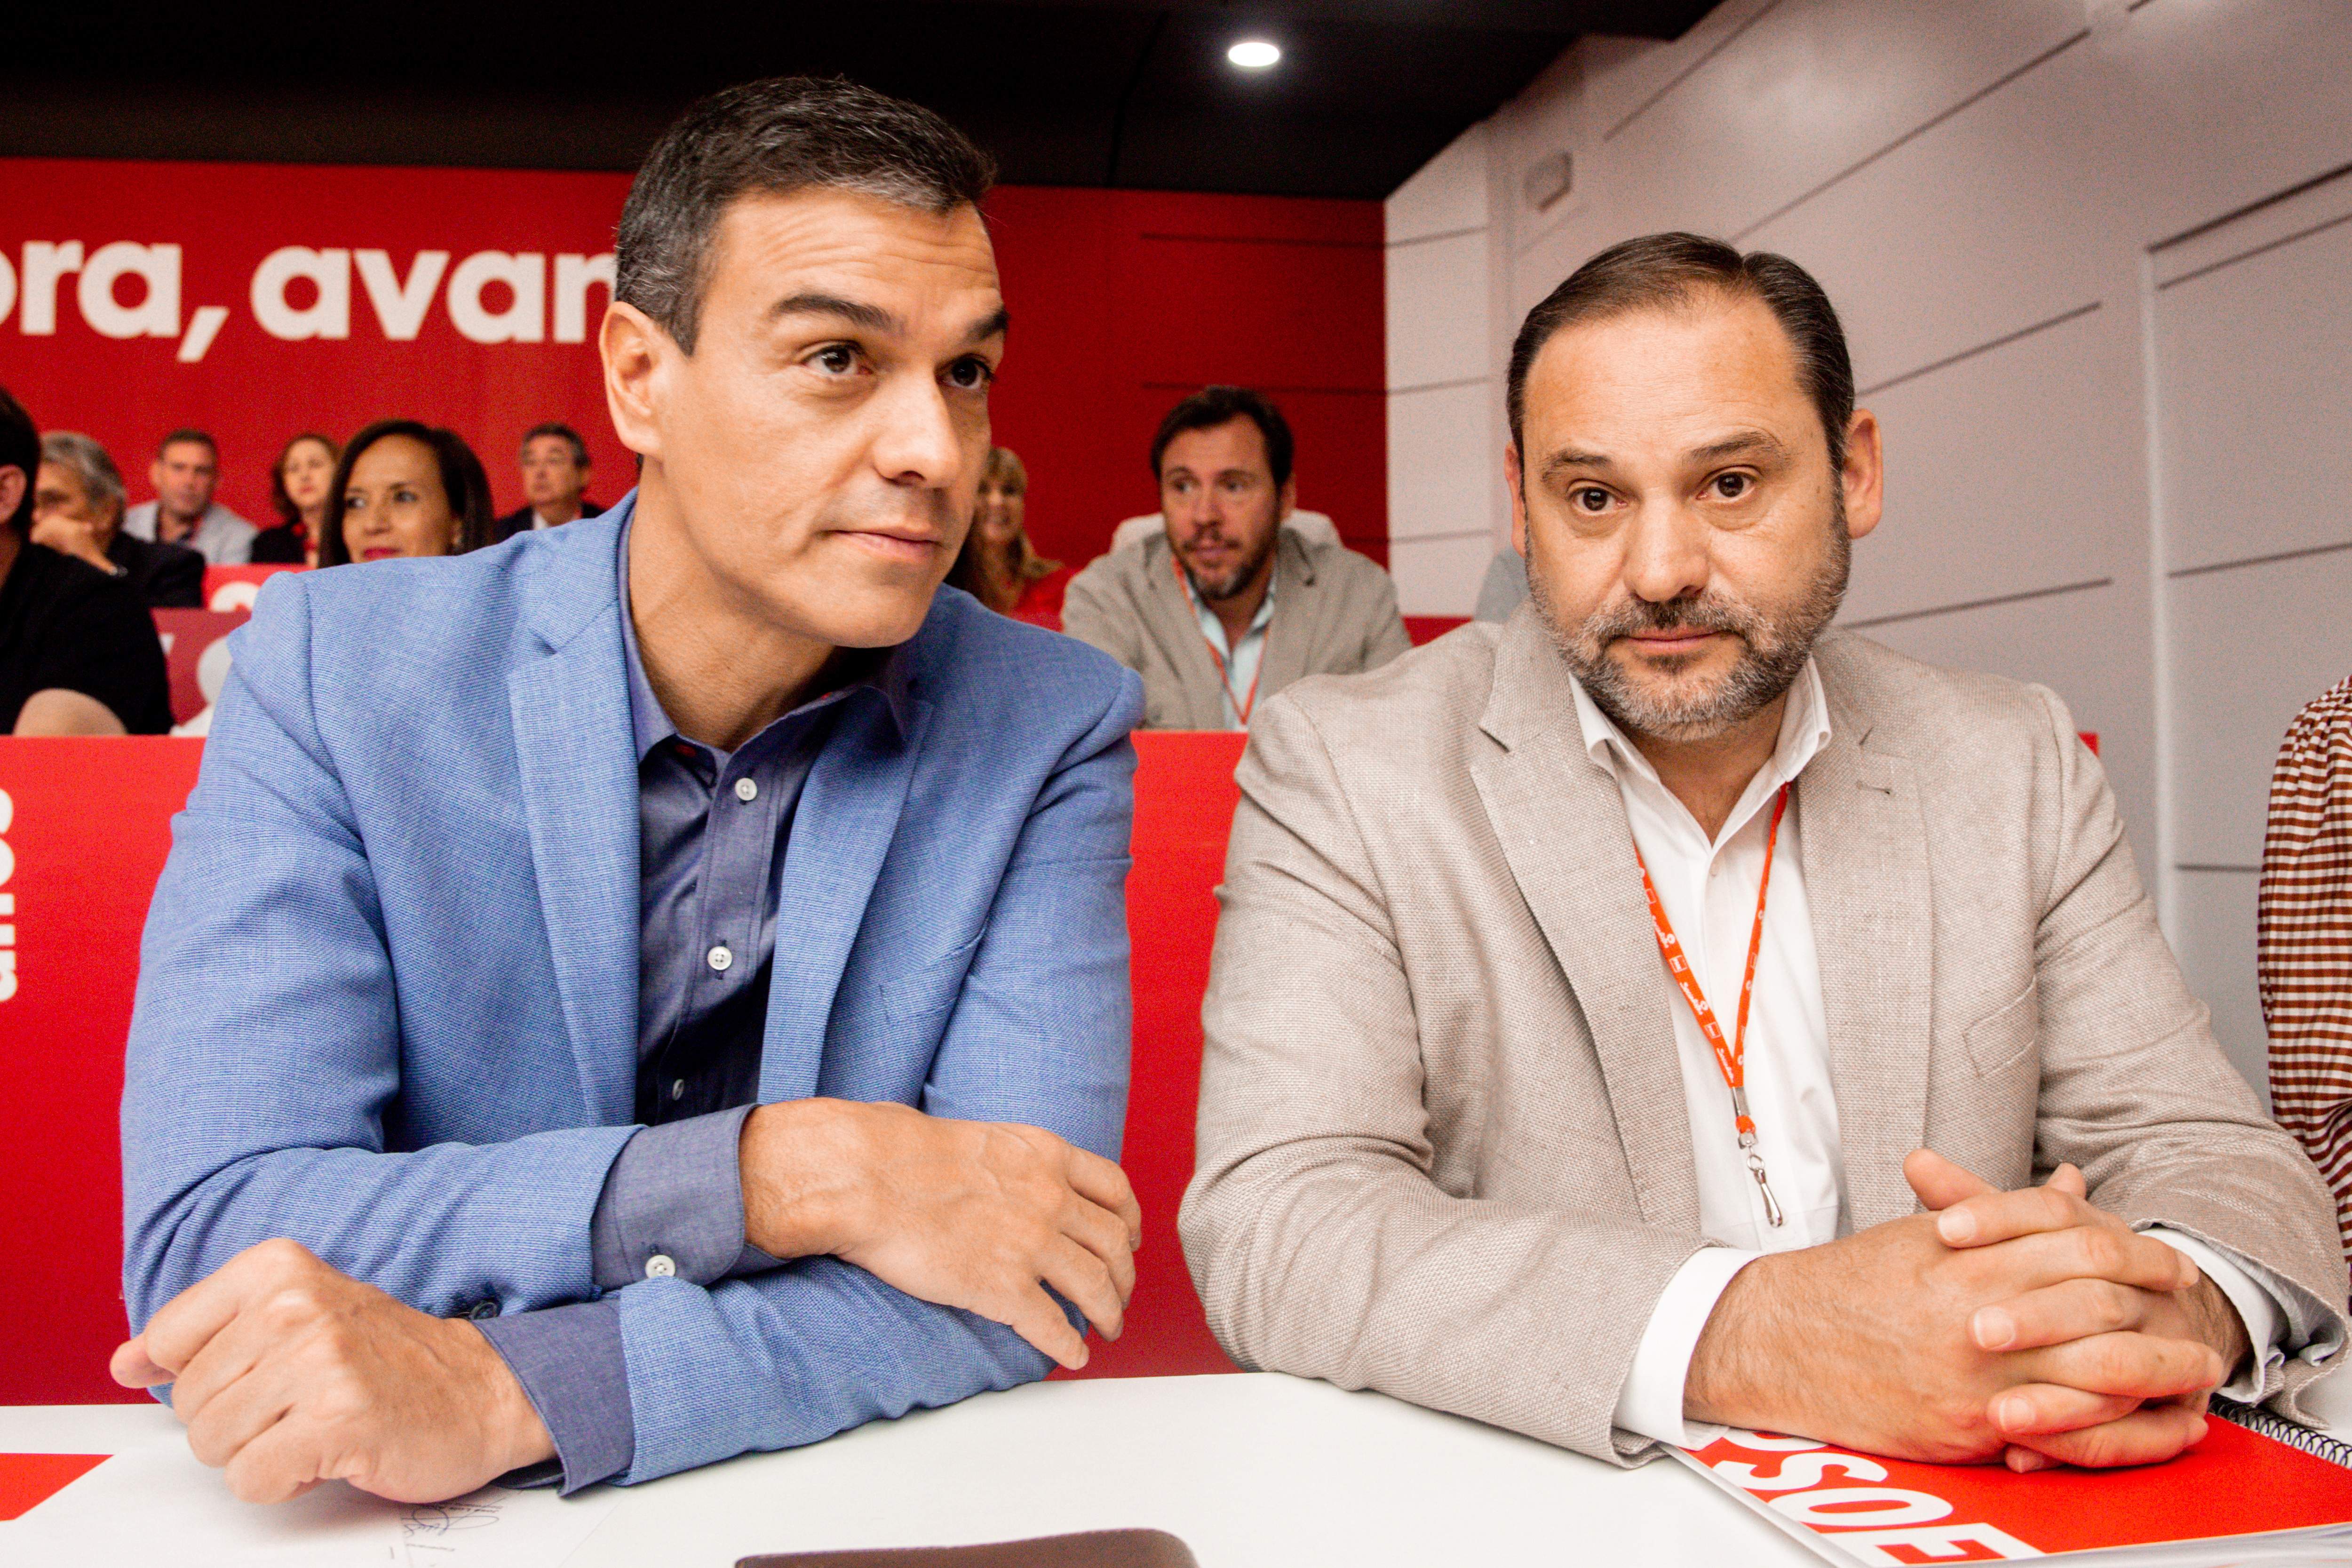 El PSOE pide disculpas a Ábalos por la publicación de sus datos personales al expulsarlo